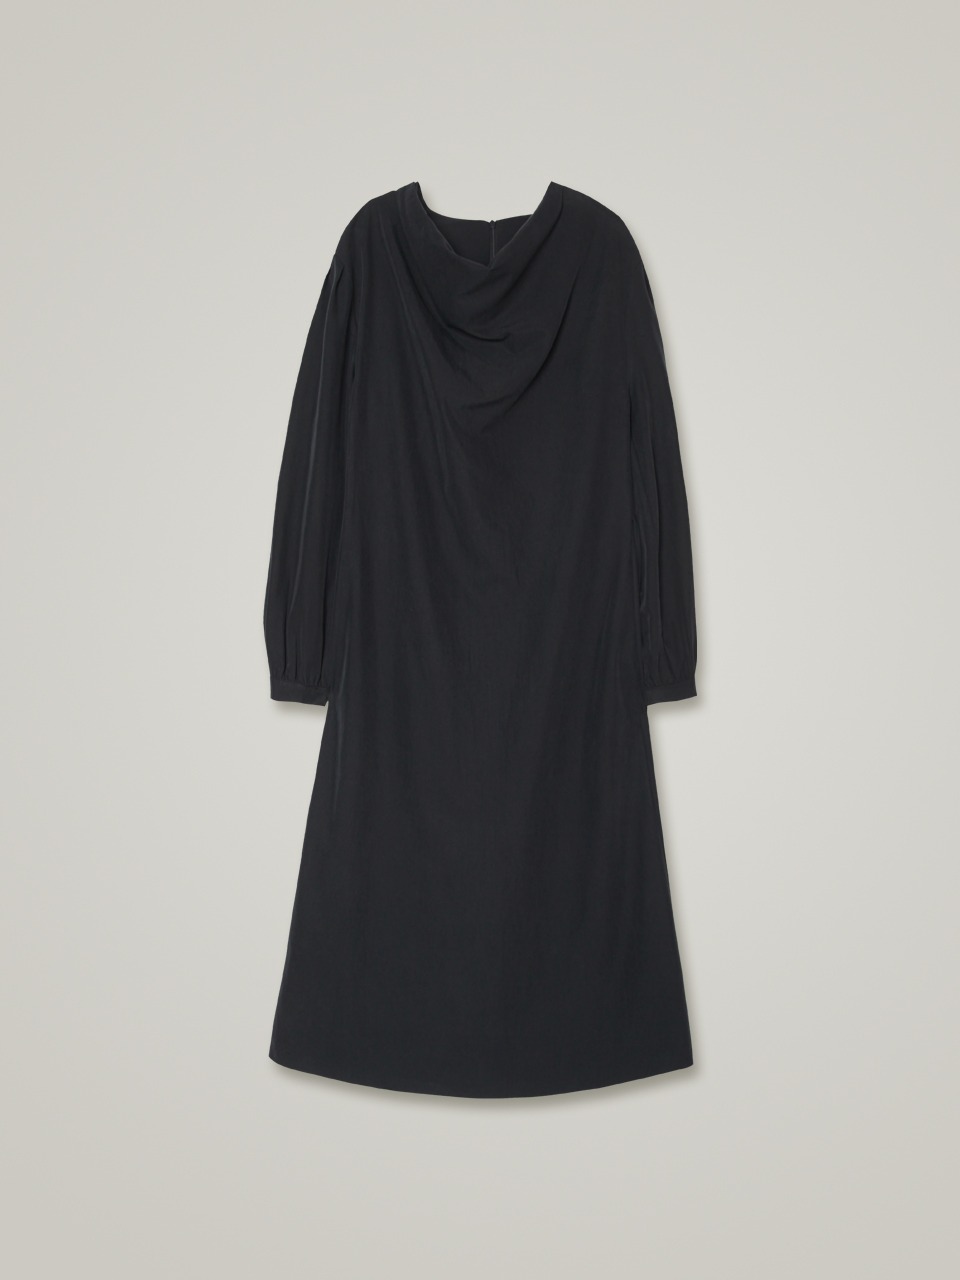 comos 727 neck drape long dress (black)